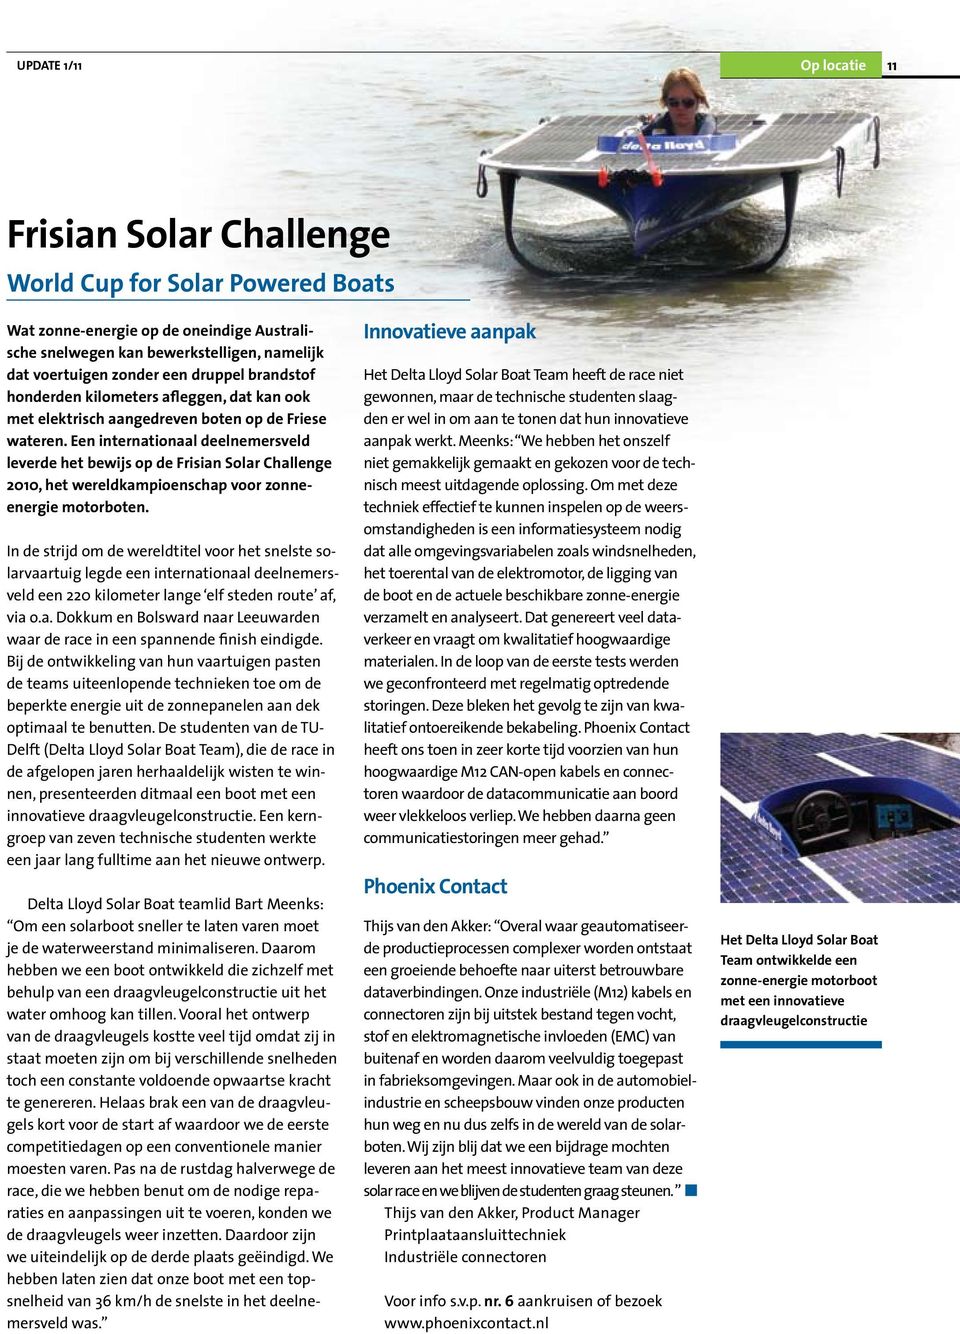 Een internationaal deelnemersveld leverde het bewijs op de Frisian Solar Challenge 2010, het wereldkampioenschap voor zonneenergie motorboten.